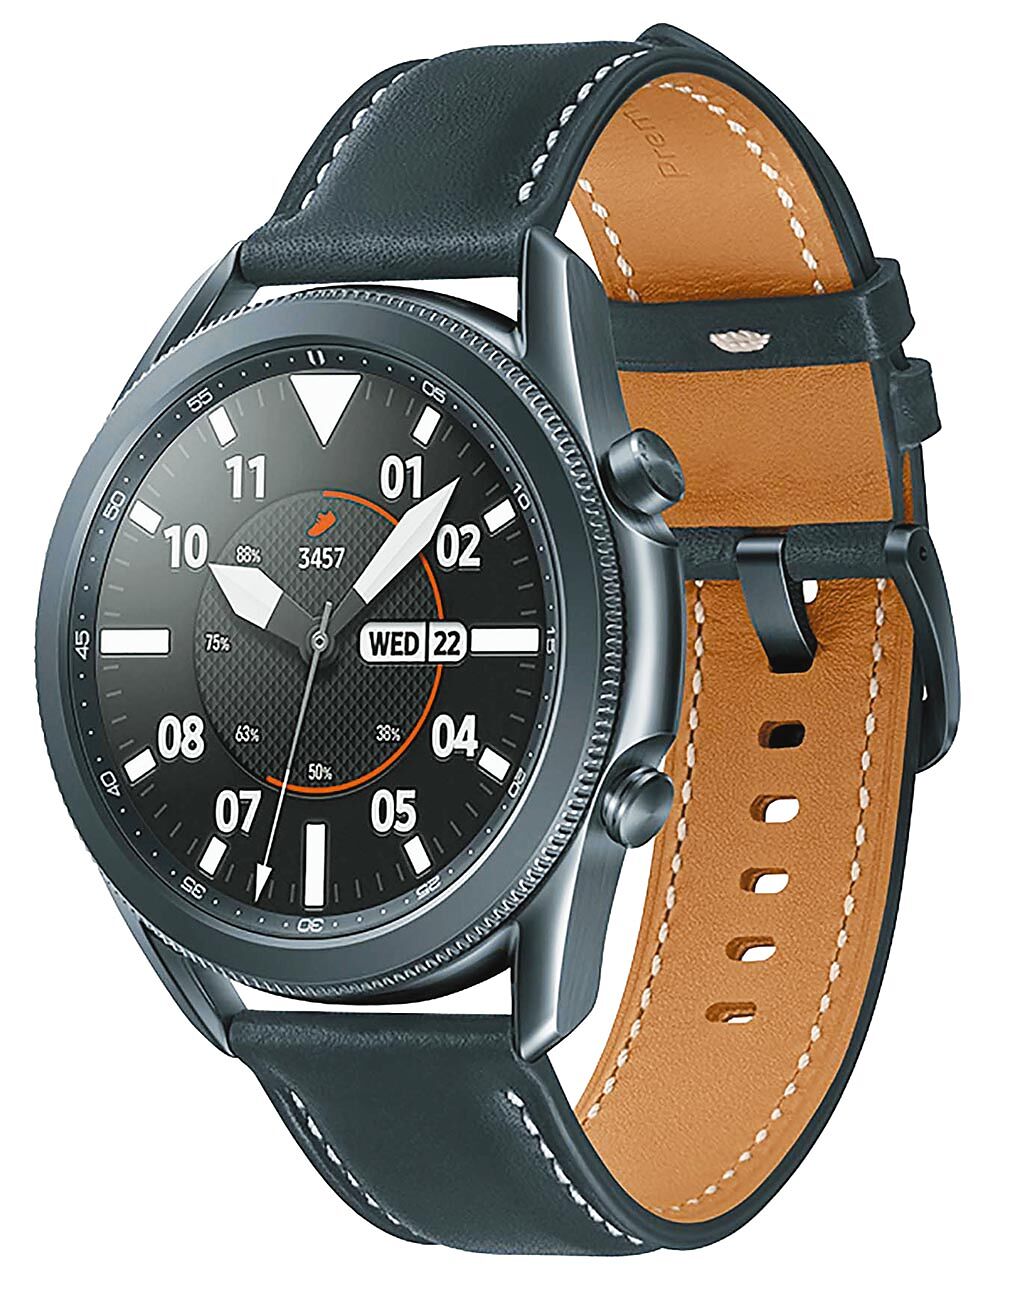 台灣三星明（1日）至8月31日期間推出Galaxy Watch3、Galaxy Watch Active2買就送夏日運動包組；Galaxy Watch3 星幻黑，定價1萬4500。（三星提供）